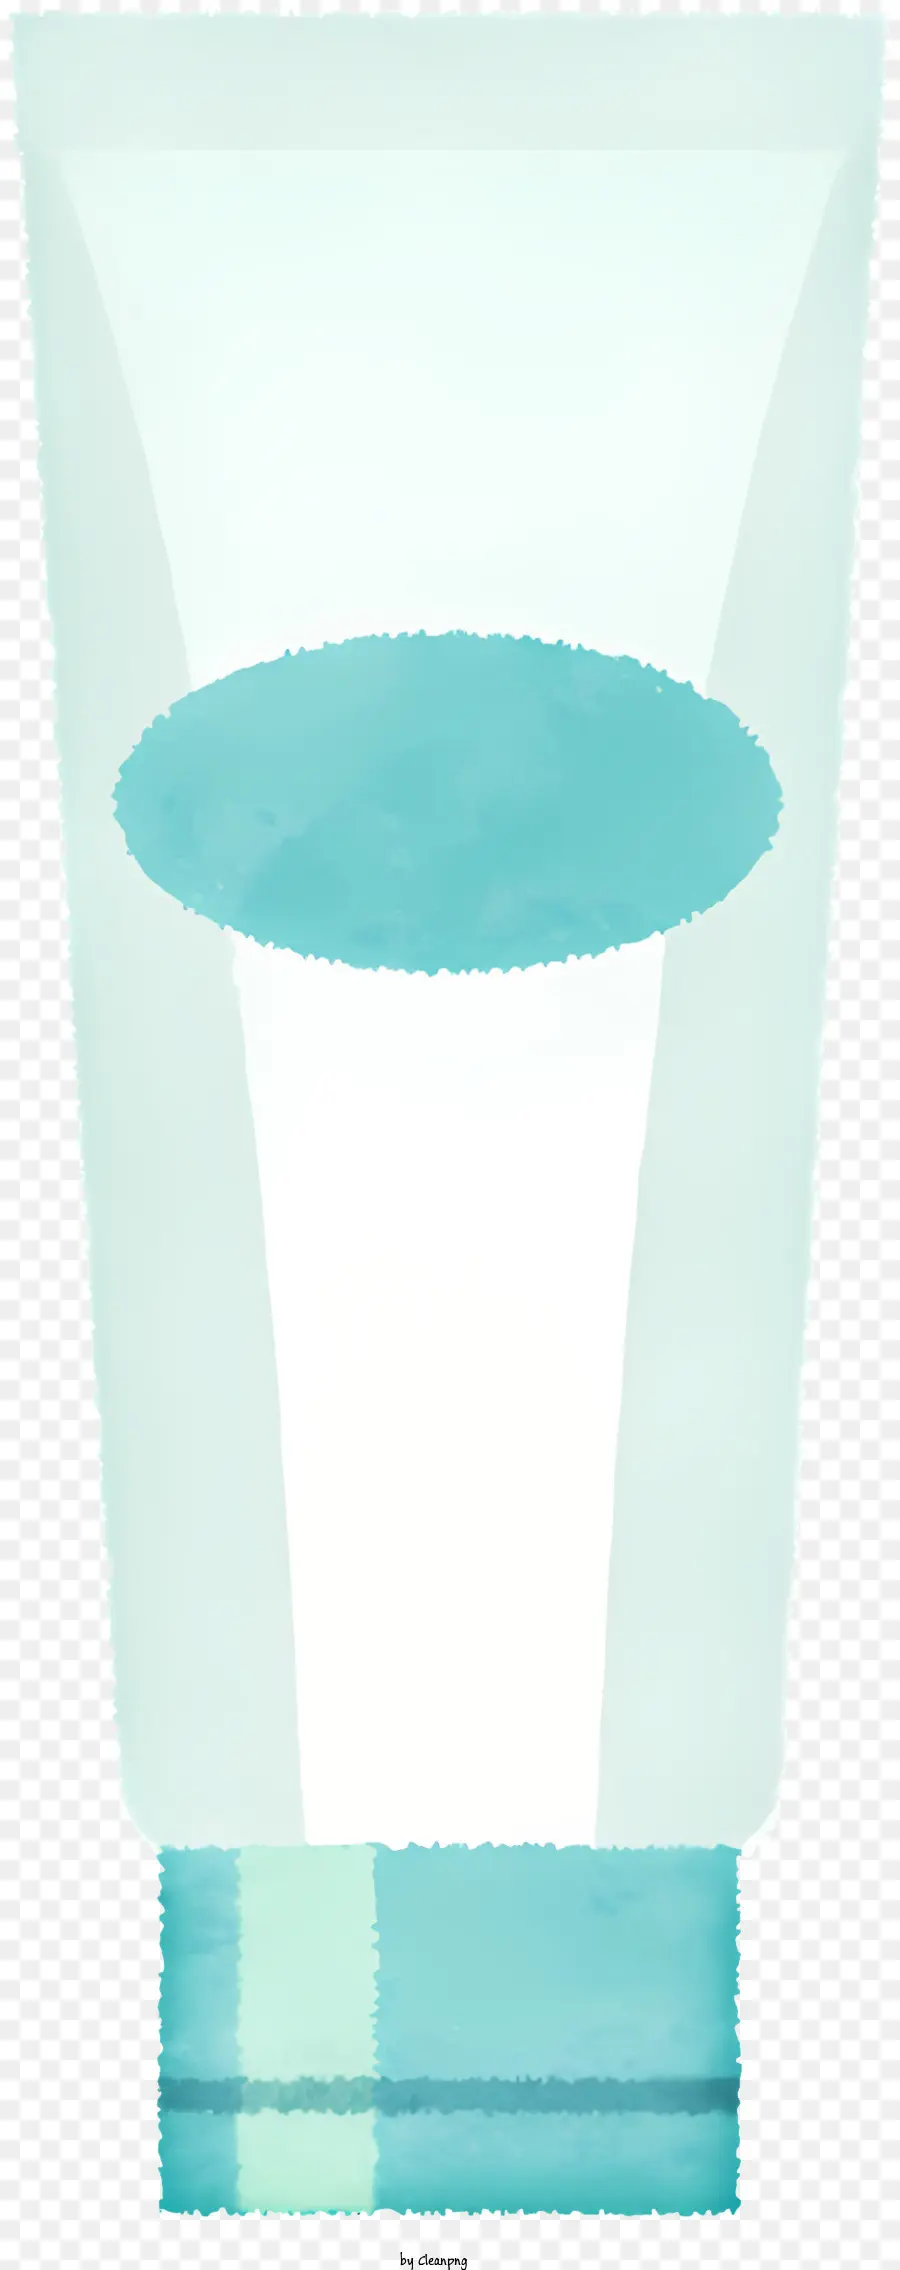 icona contenitore in plastica traslucida striscia di plastica blu in plastica trasparente tappo di plastica - Contenitore cilindrico piccolo fatto di plastica traslucida